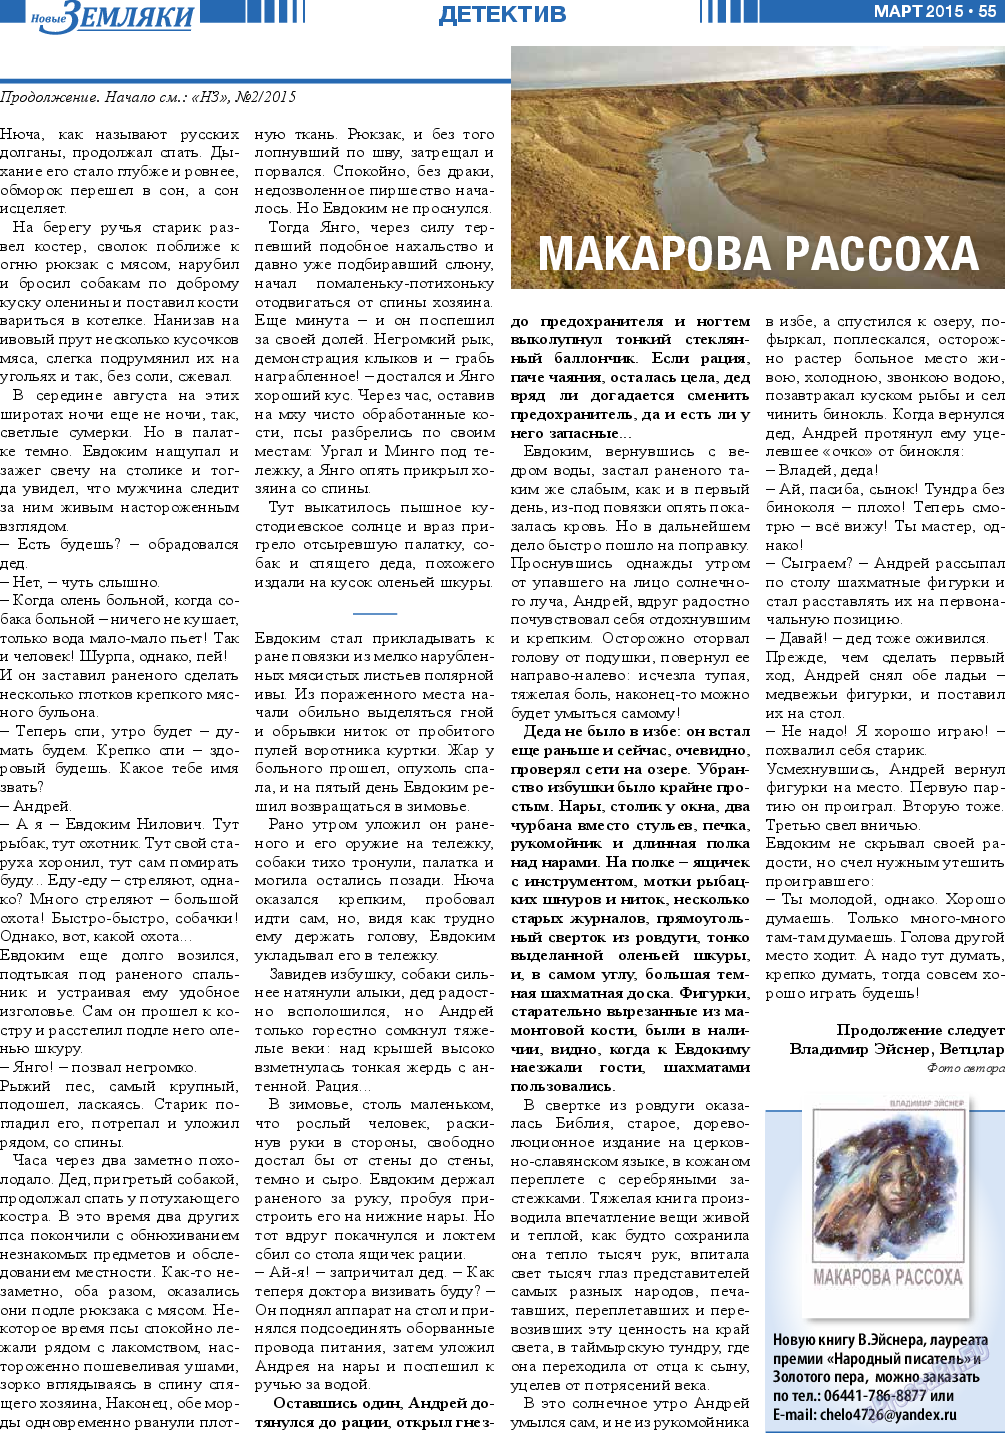 Новые Земляки, газета. 2015 №3 стр.55